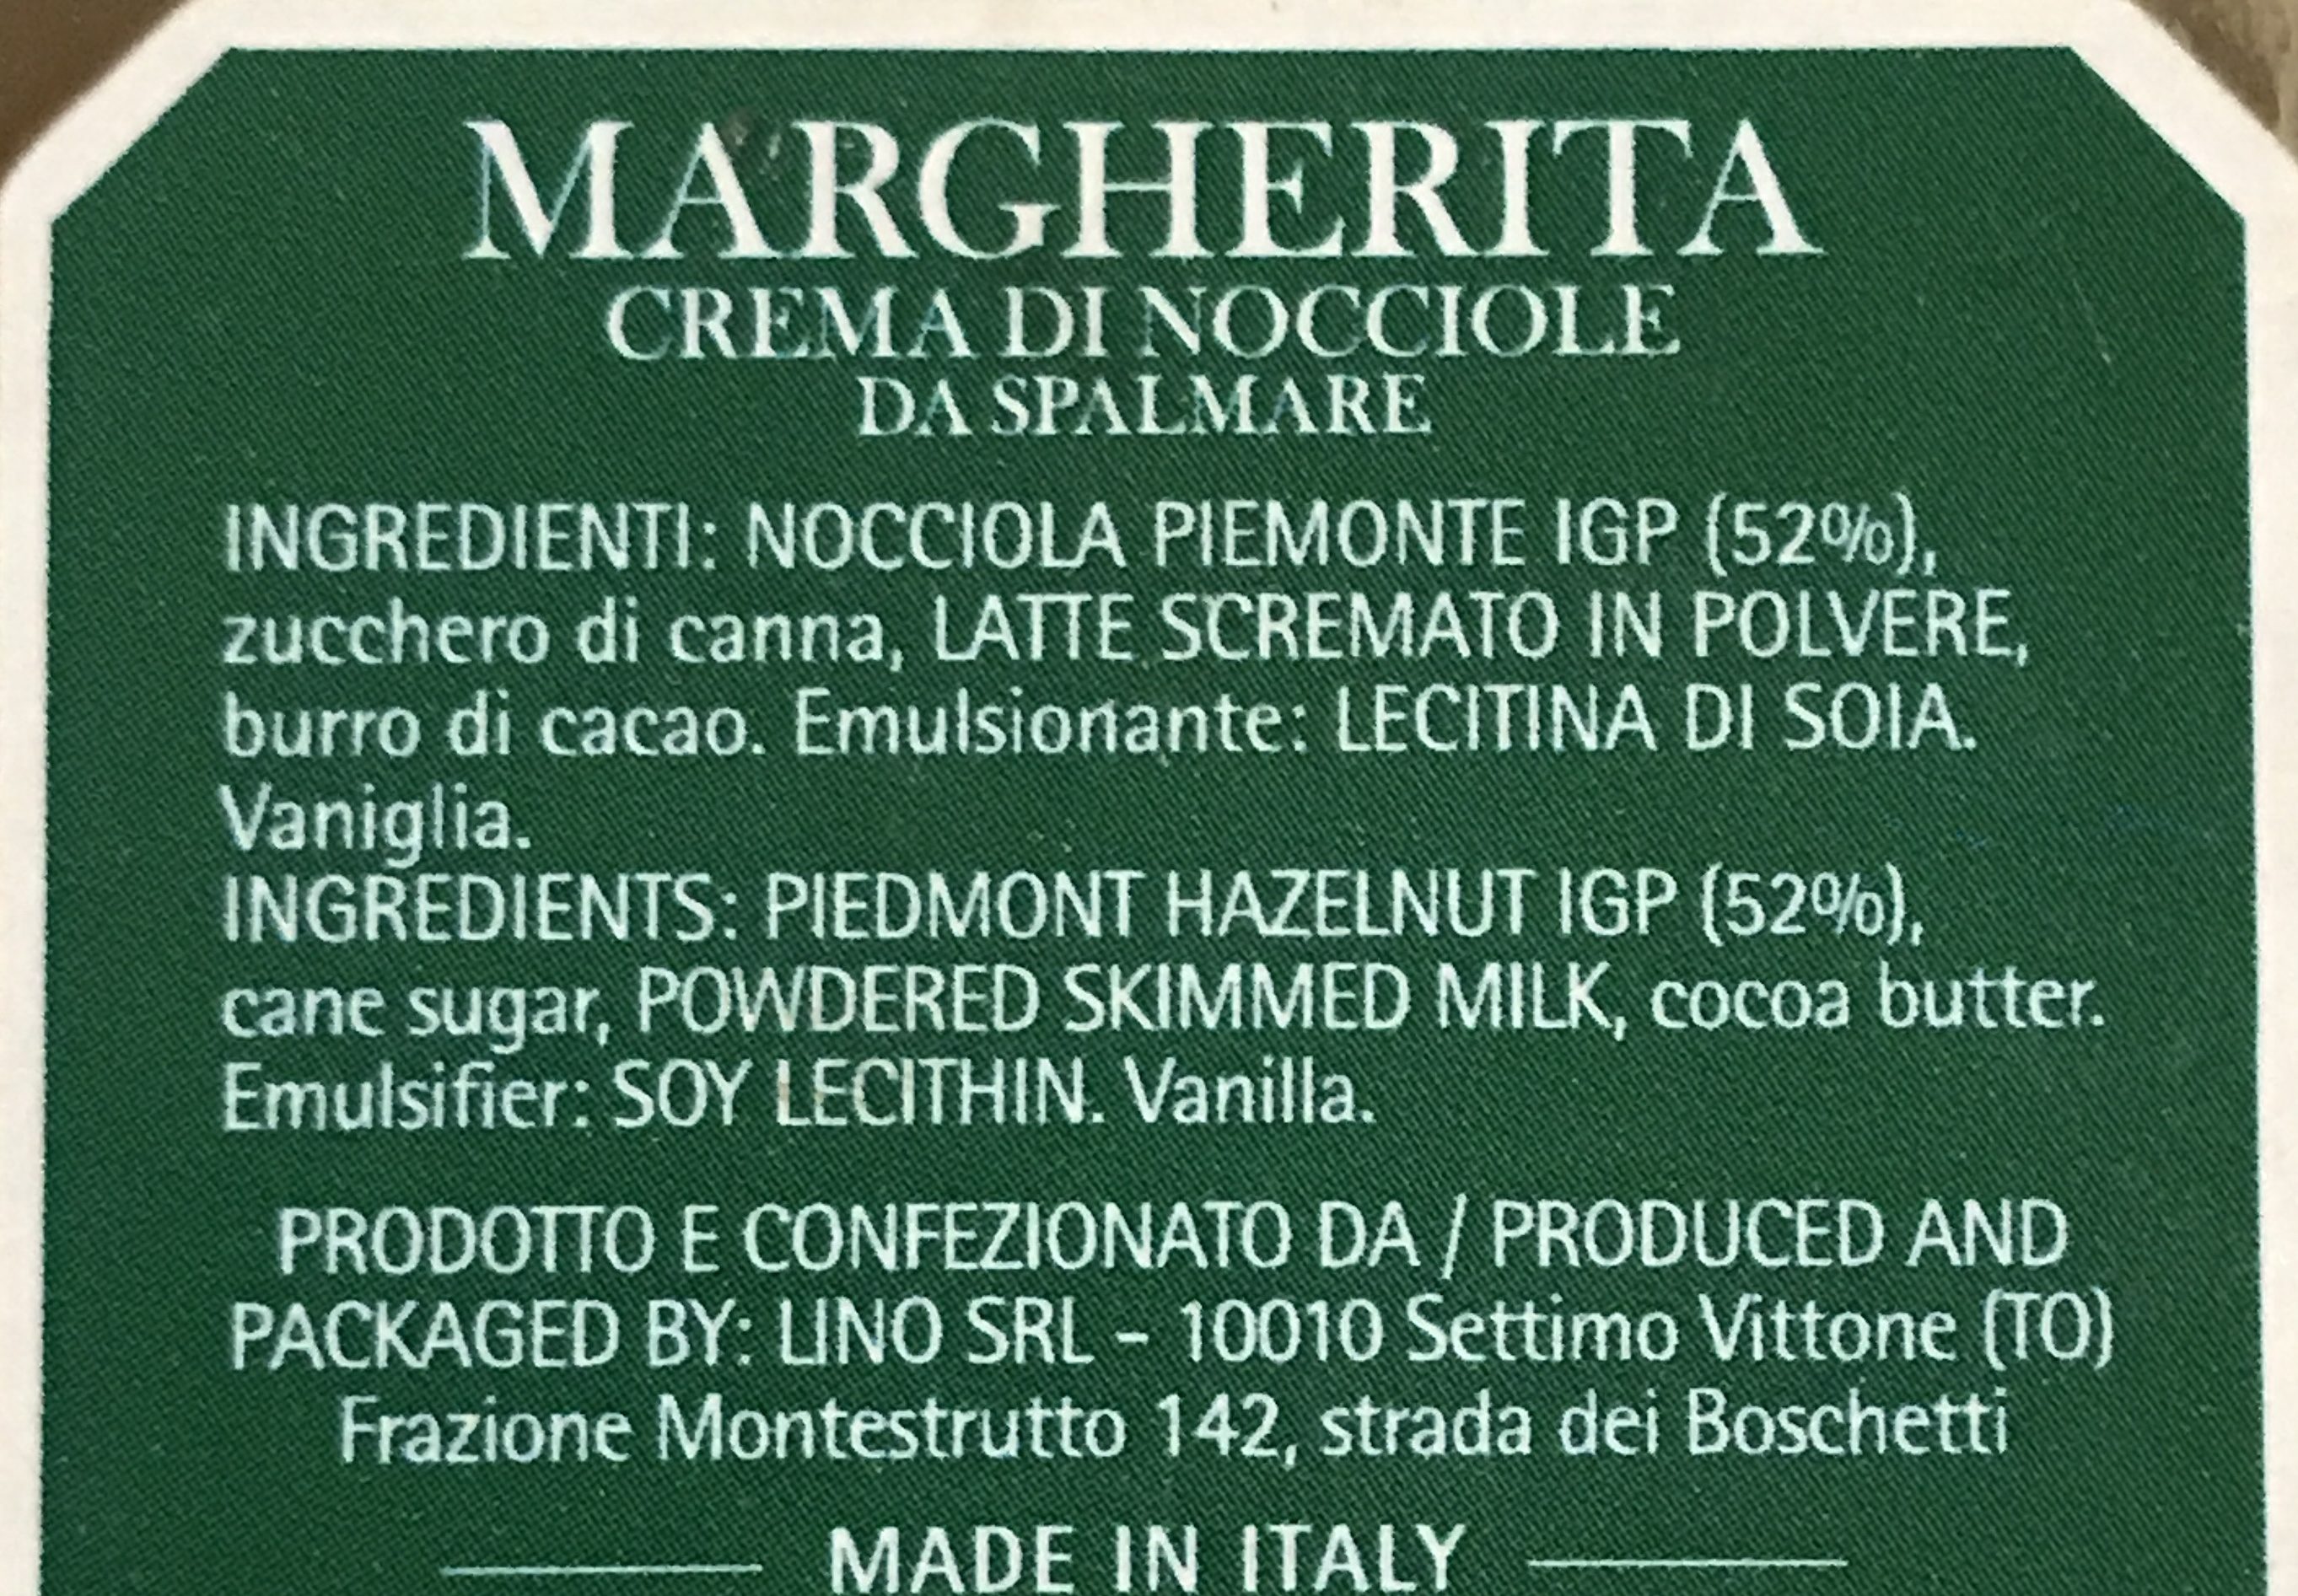 Haselnusscreme Margherita crema di nocciole - Ingrédients